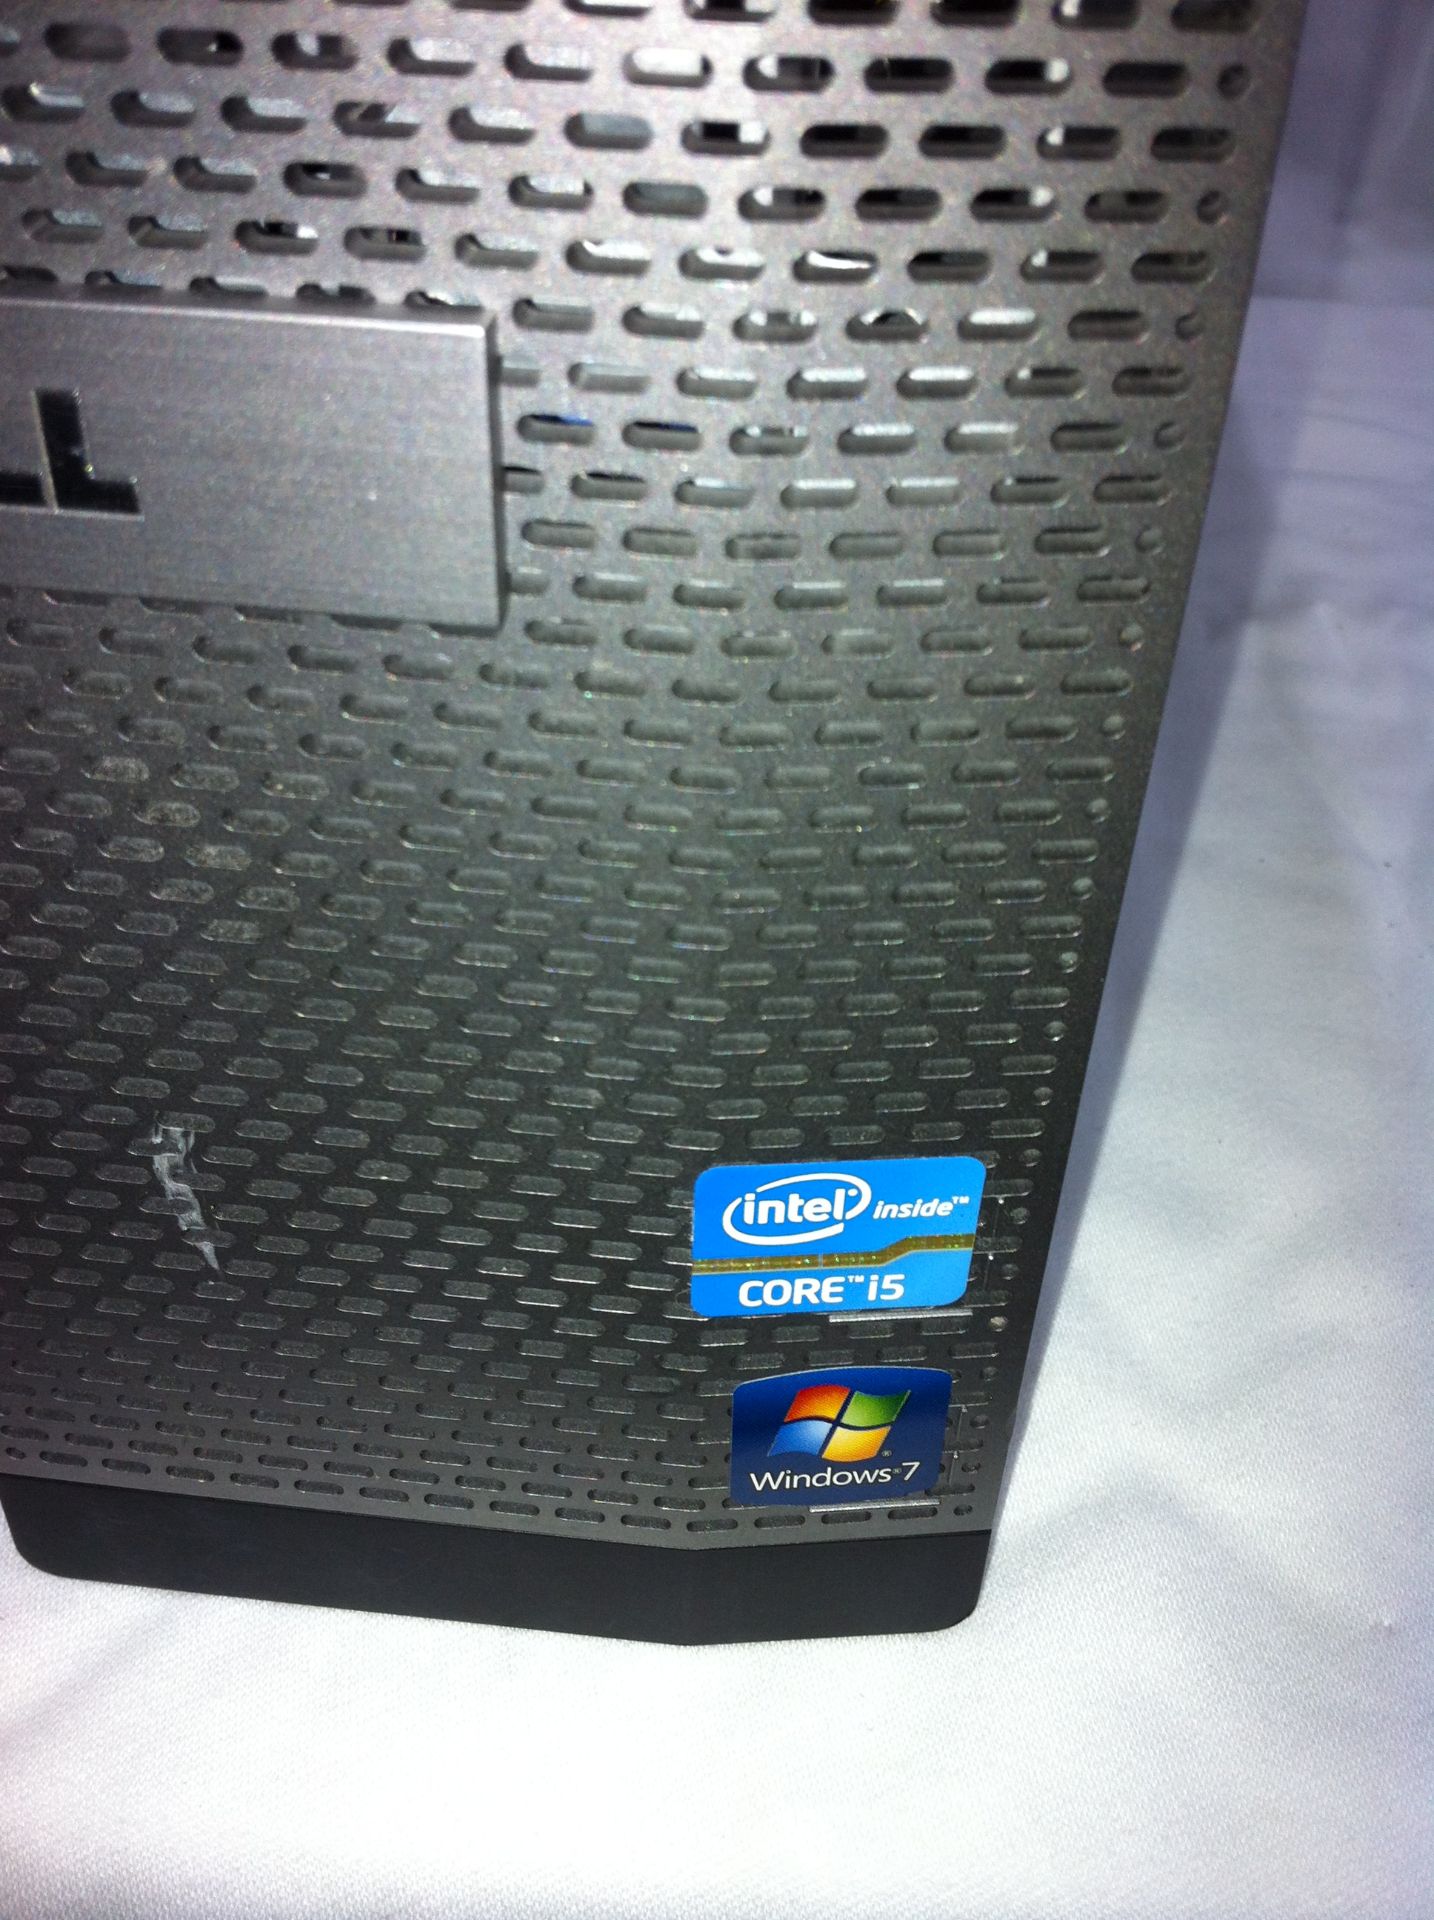 Dell Optiplex 390 Core i5 PC - Image 3 of 3